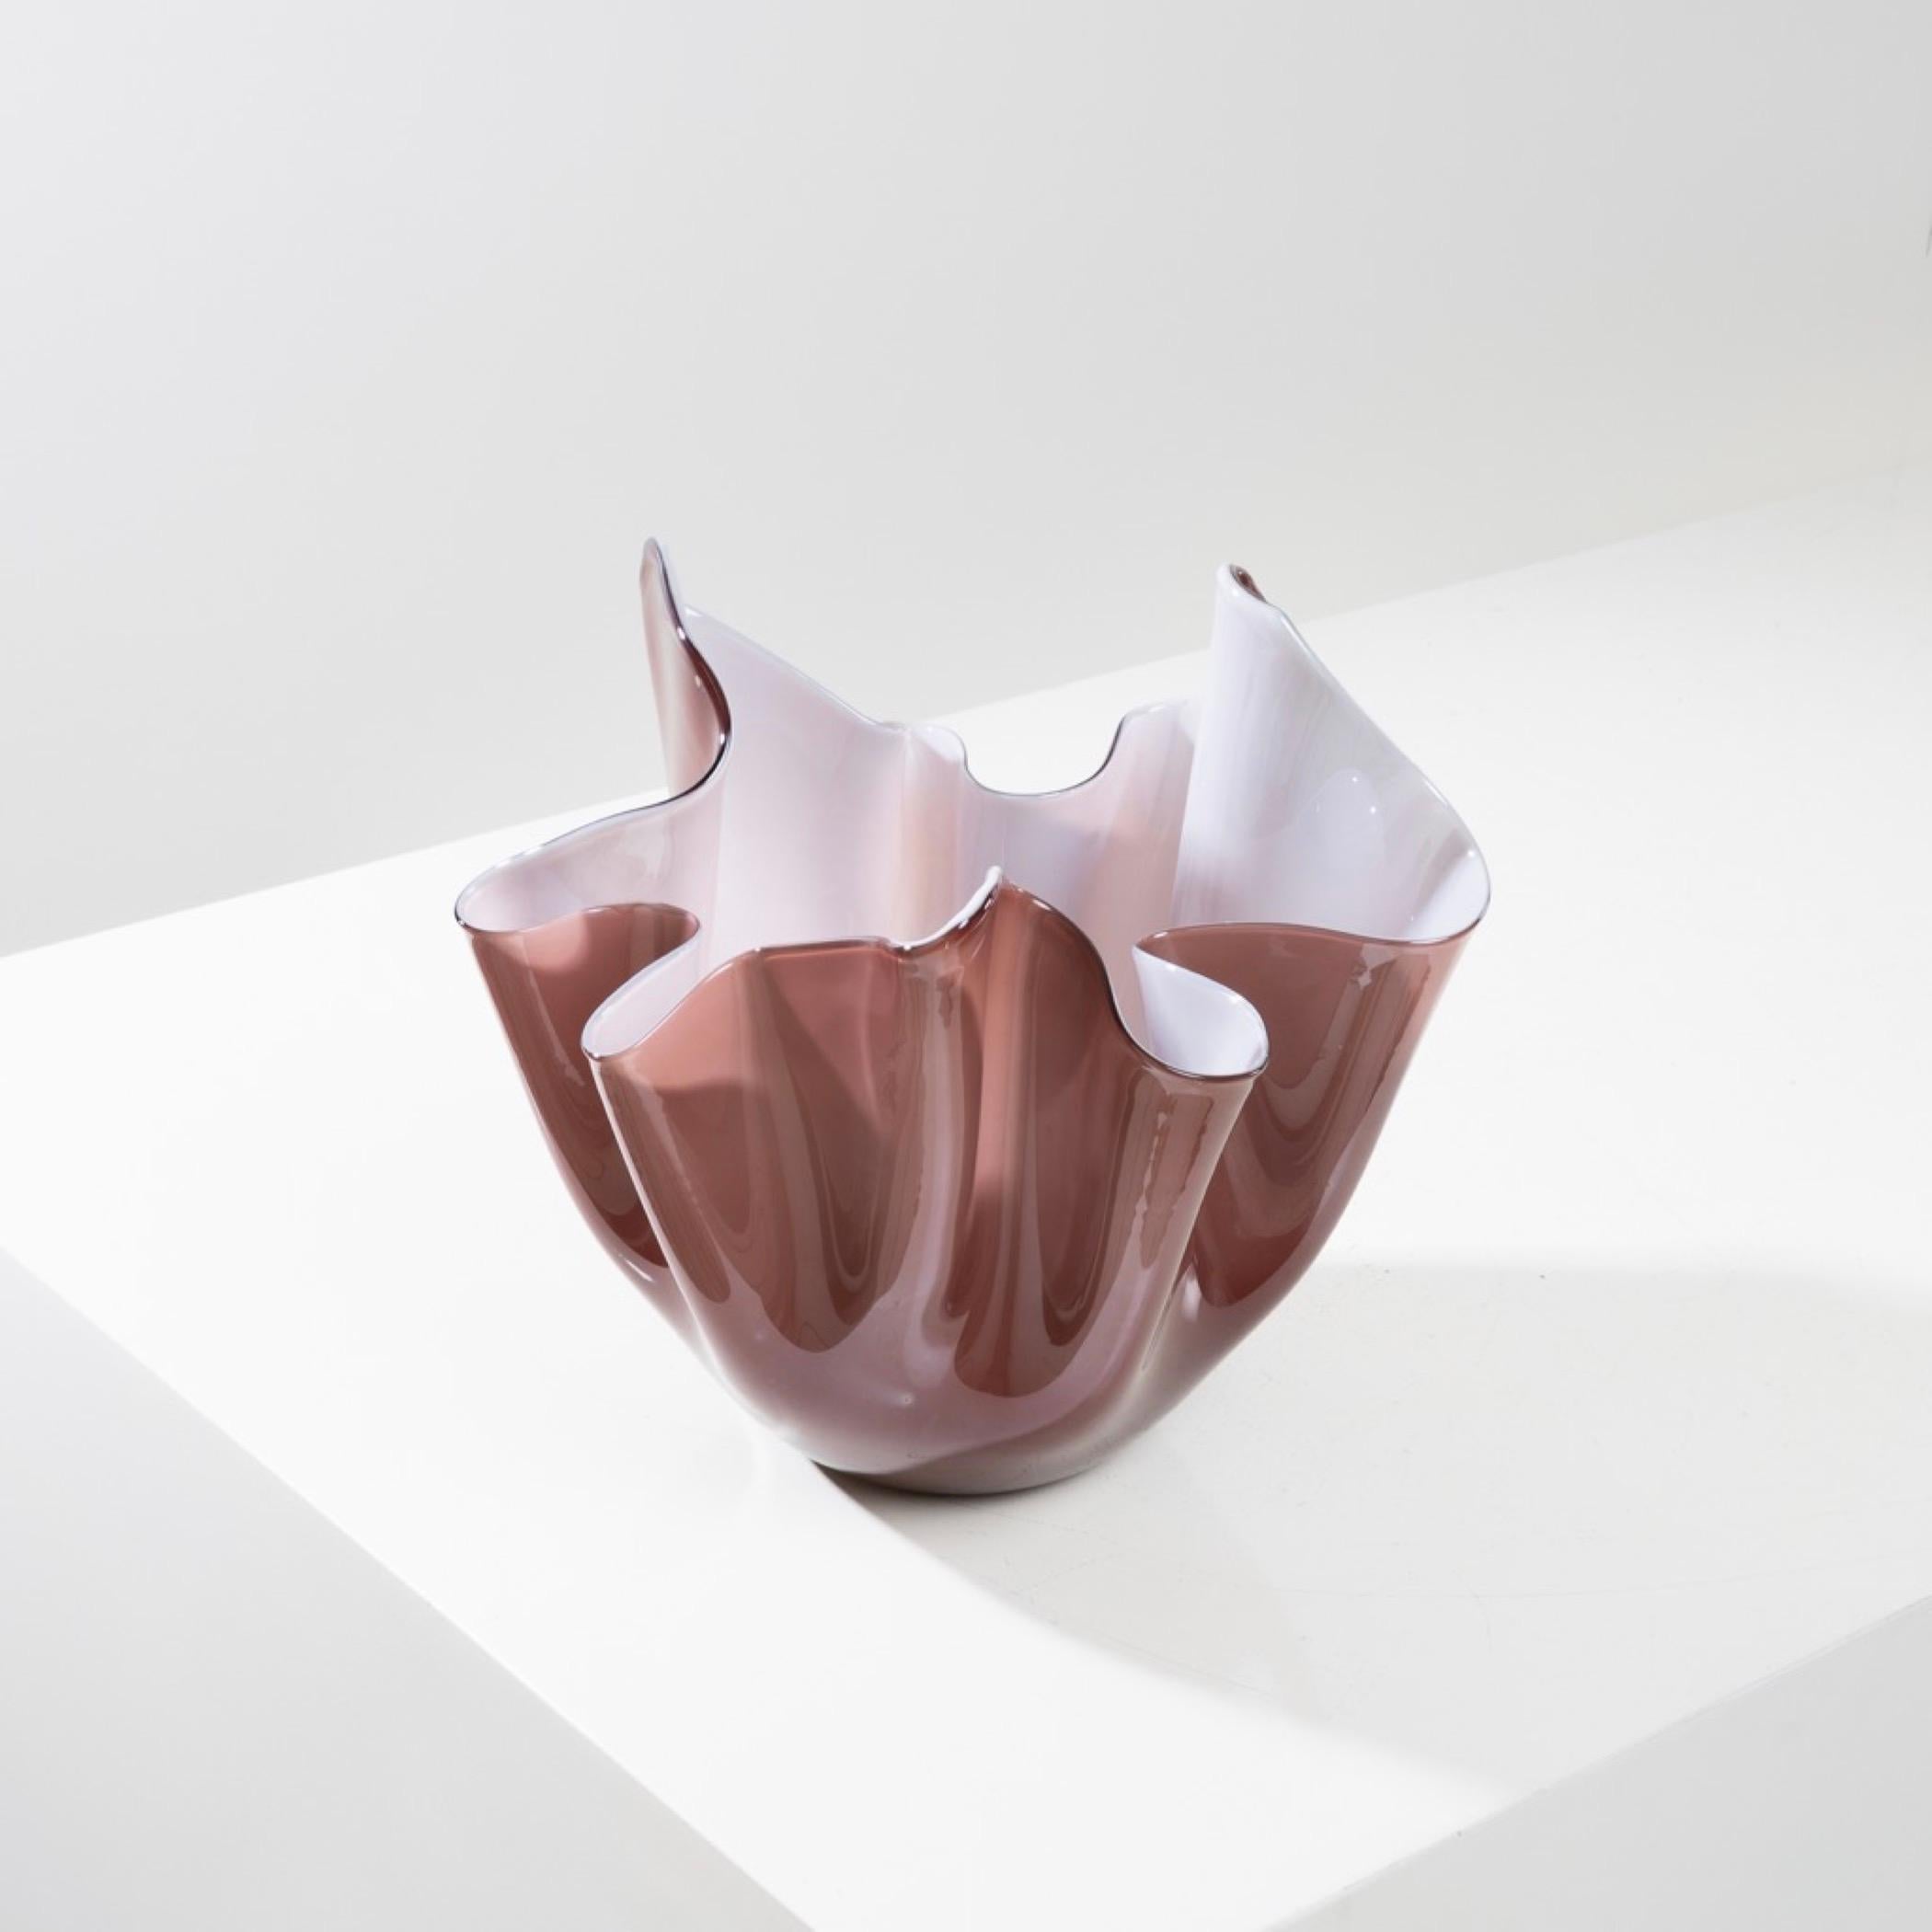 Fazzoletto-Vase (Taschentuchvase) von Fulbio Bianconi.
Fazzoletto-Vase aus Incimiciato lattimo und Braunglas.
Lattimo ist die italienische Bezeichnung für dieses milchfarbene Glas.
Fazzoletto bedeutet Taschentuch.